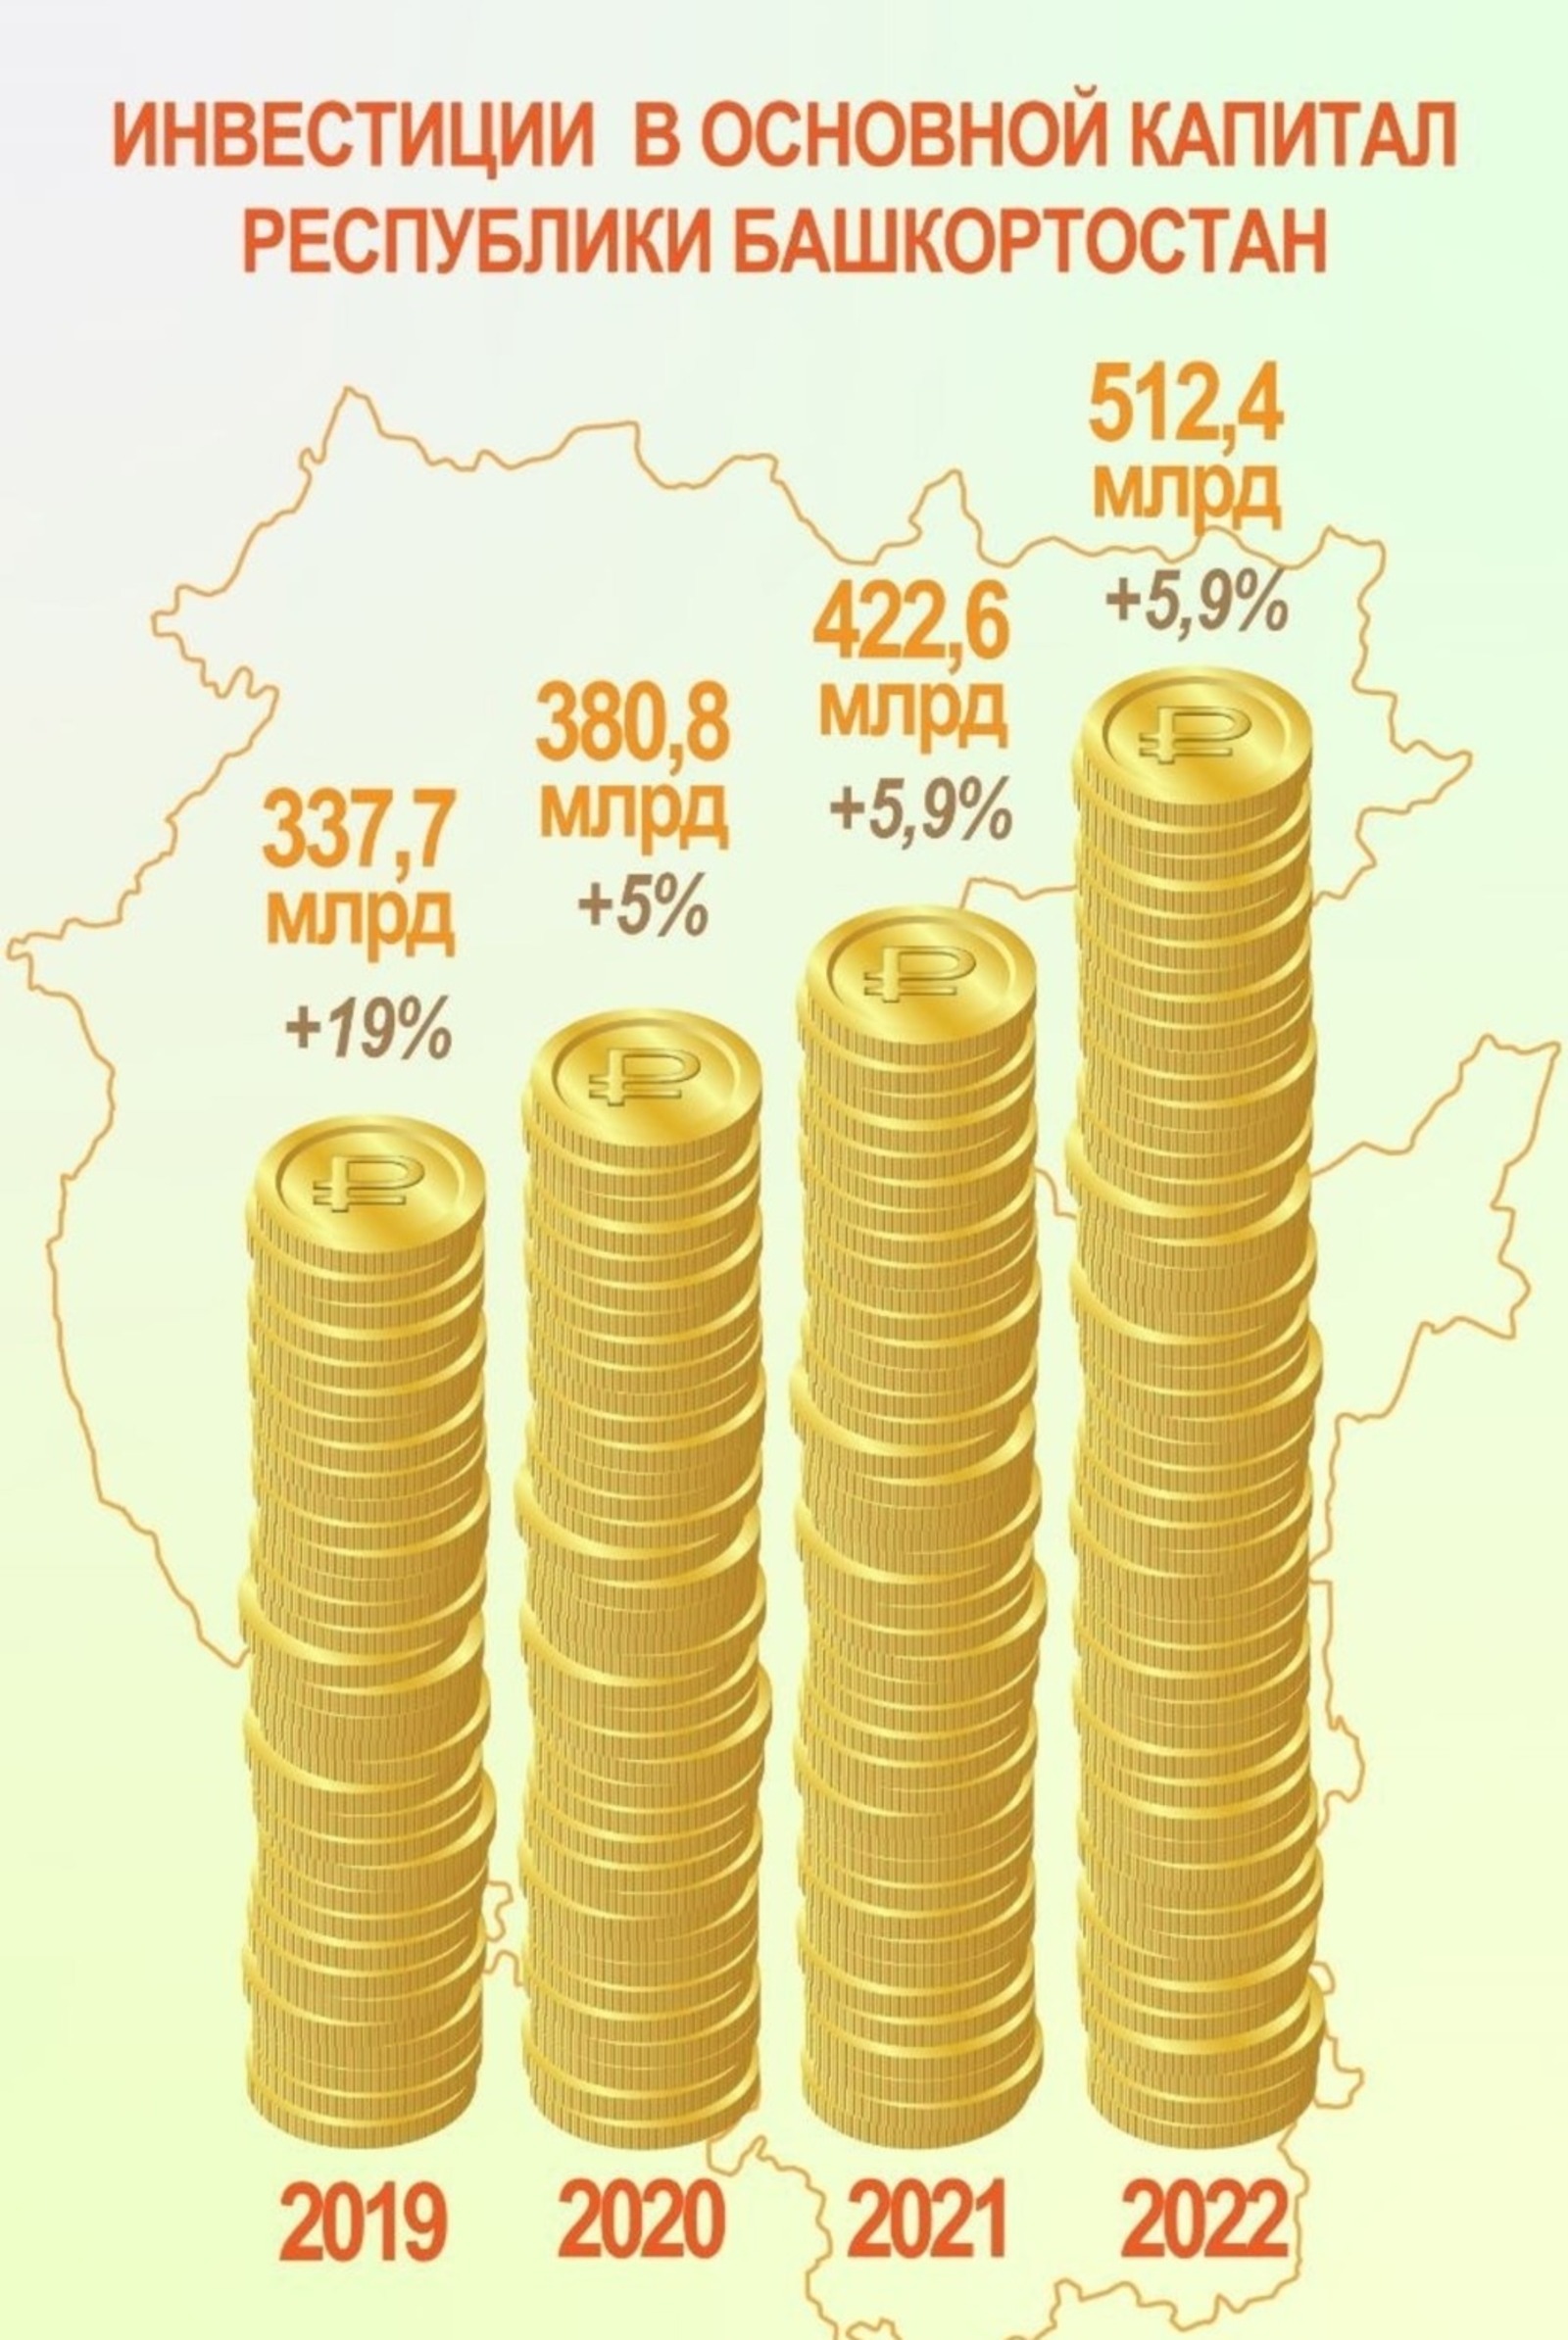 Эксперты о рекордных инвестициях в экономику Башкирии